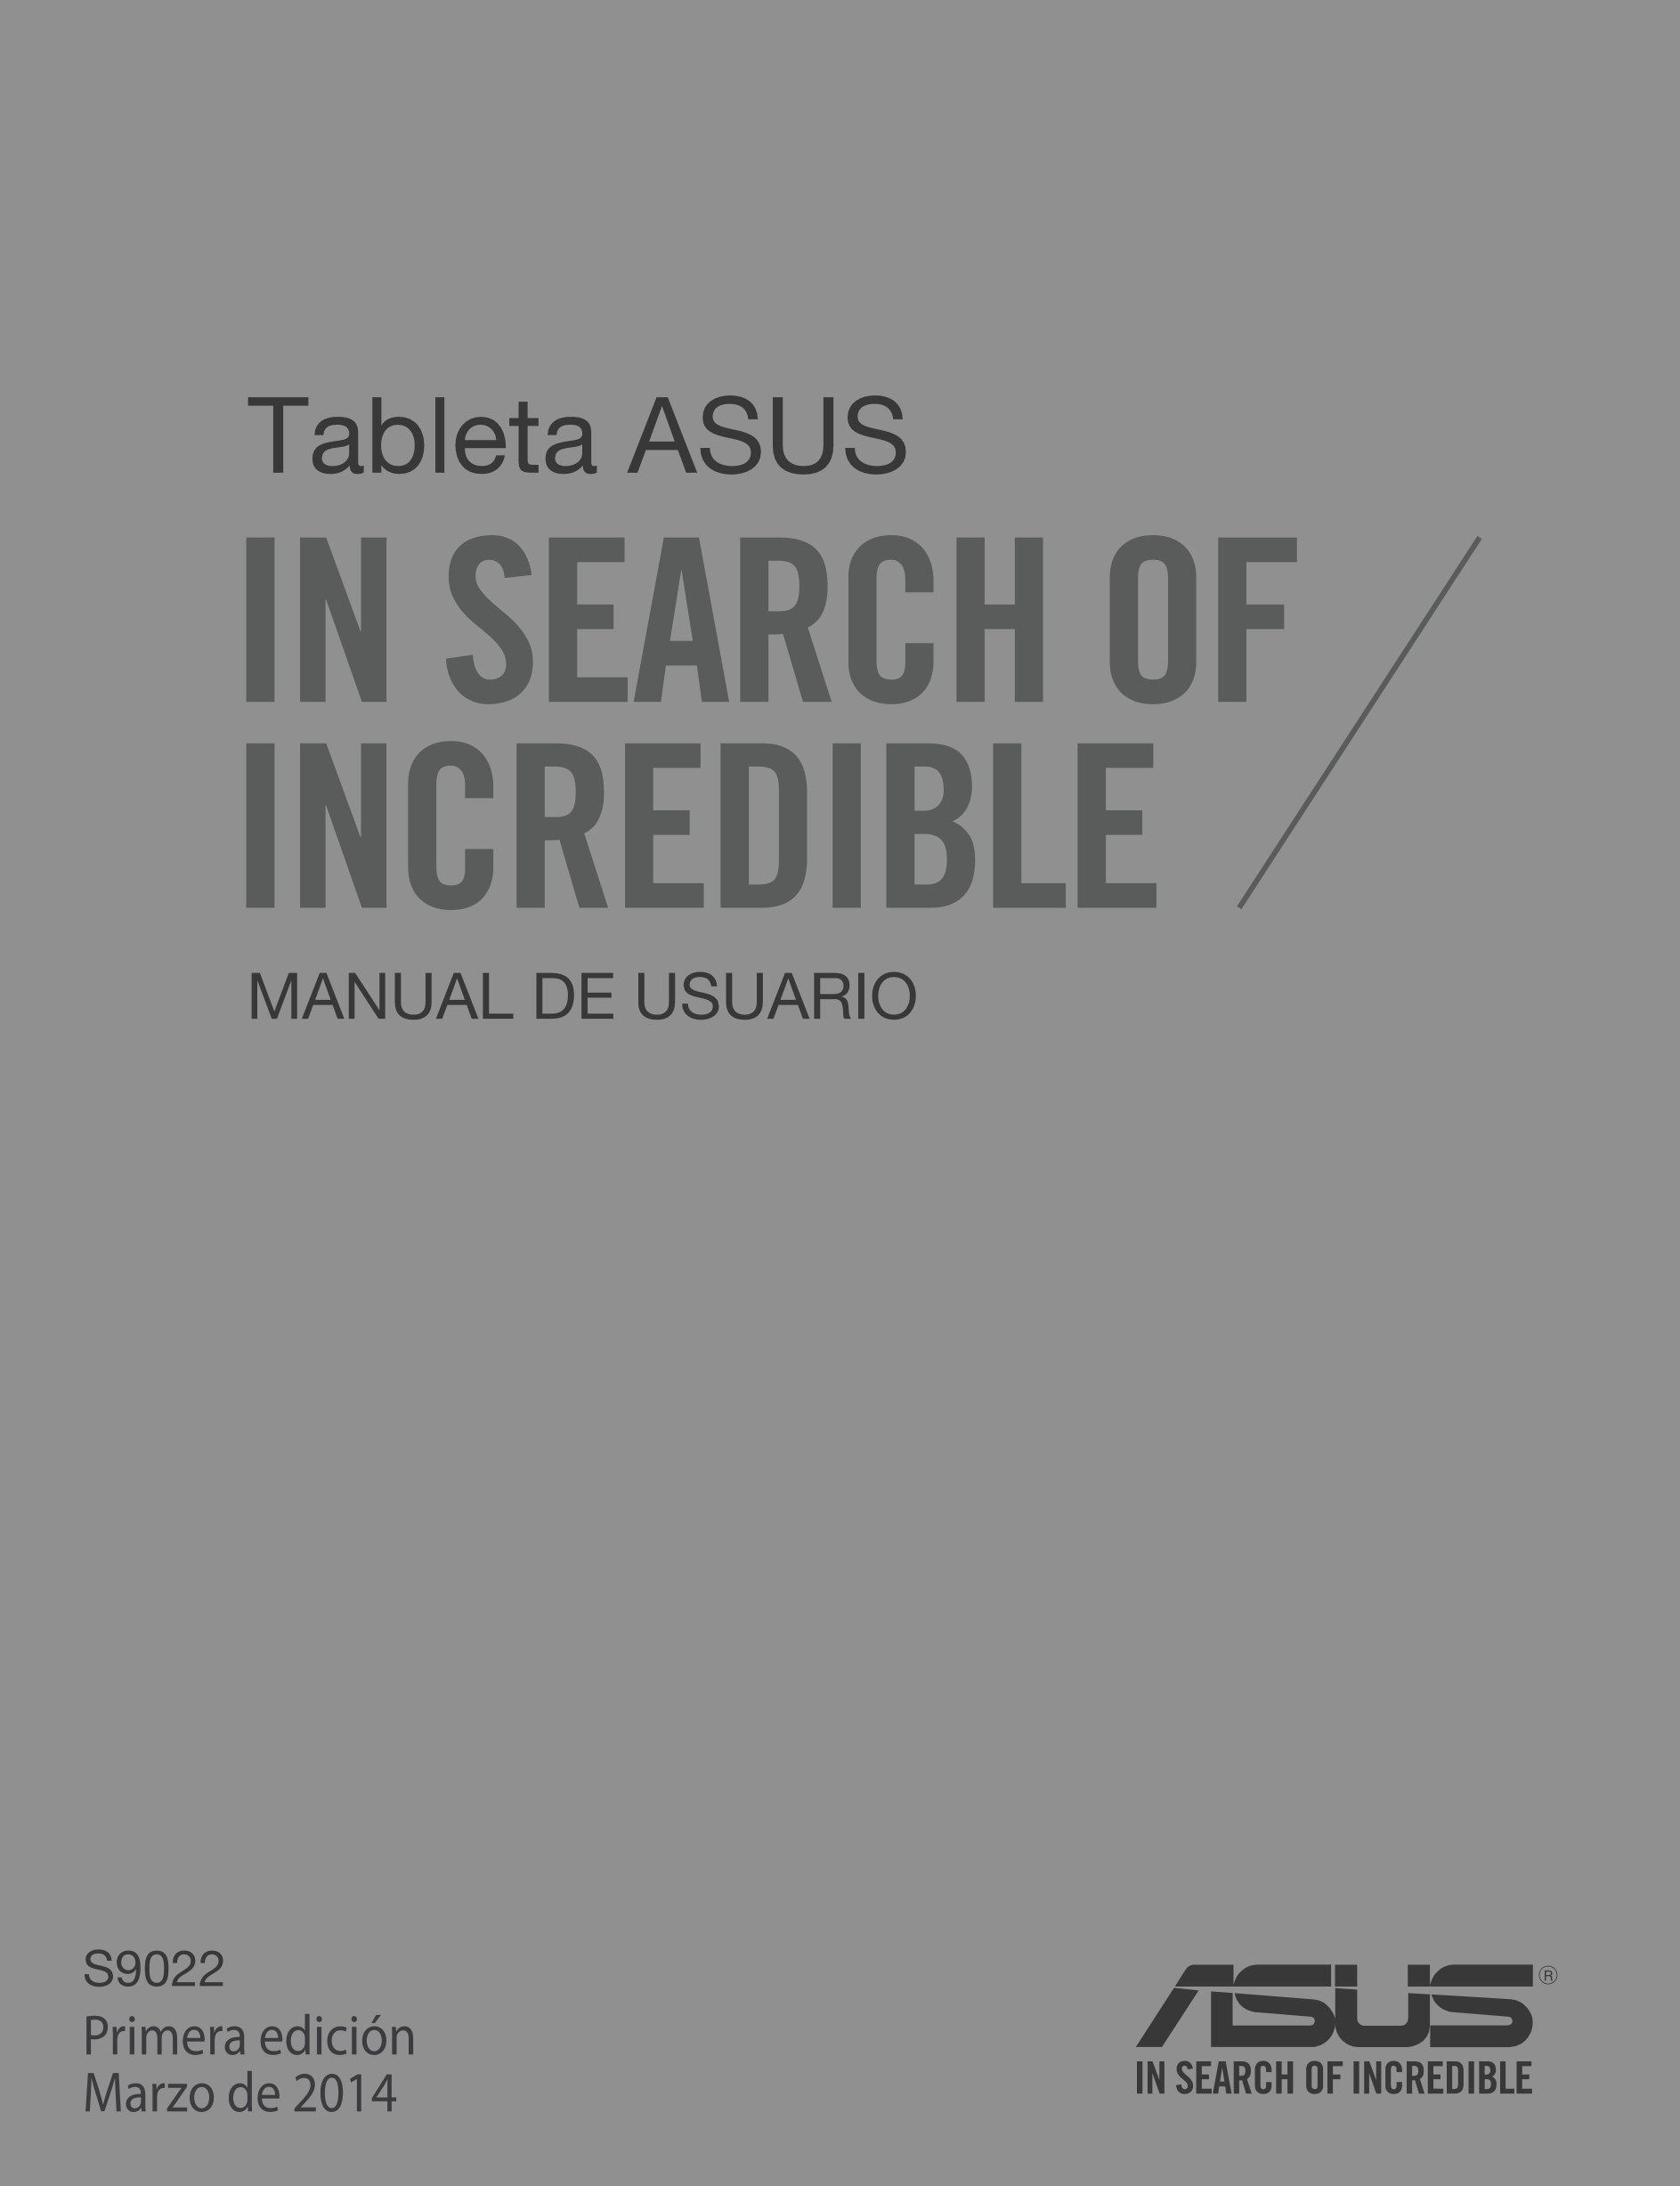 ASUS Mobile Dock
Tableta ASUS
MANUAL DE USUARIO
S9022
Primera edición
Marzo de 2014